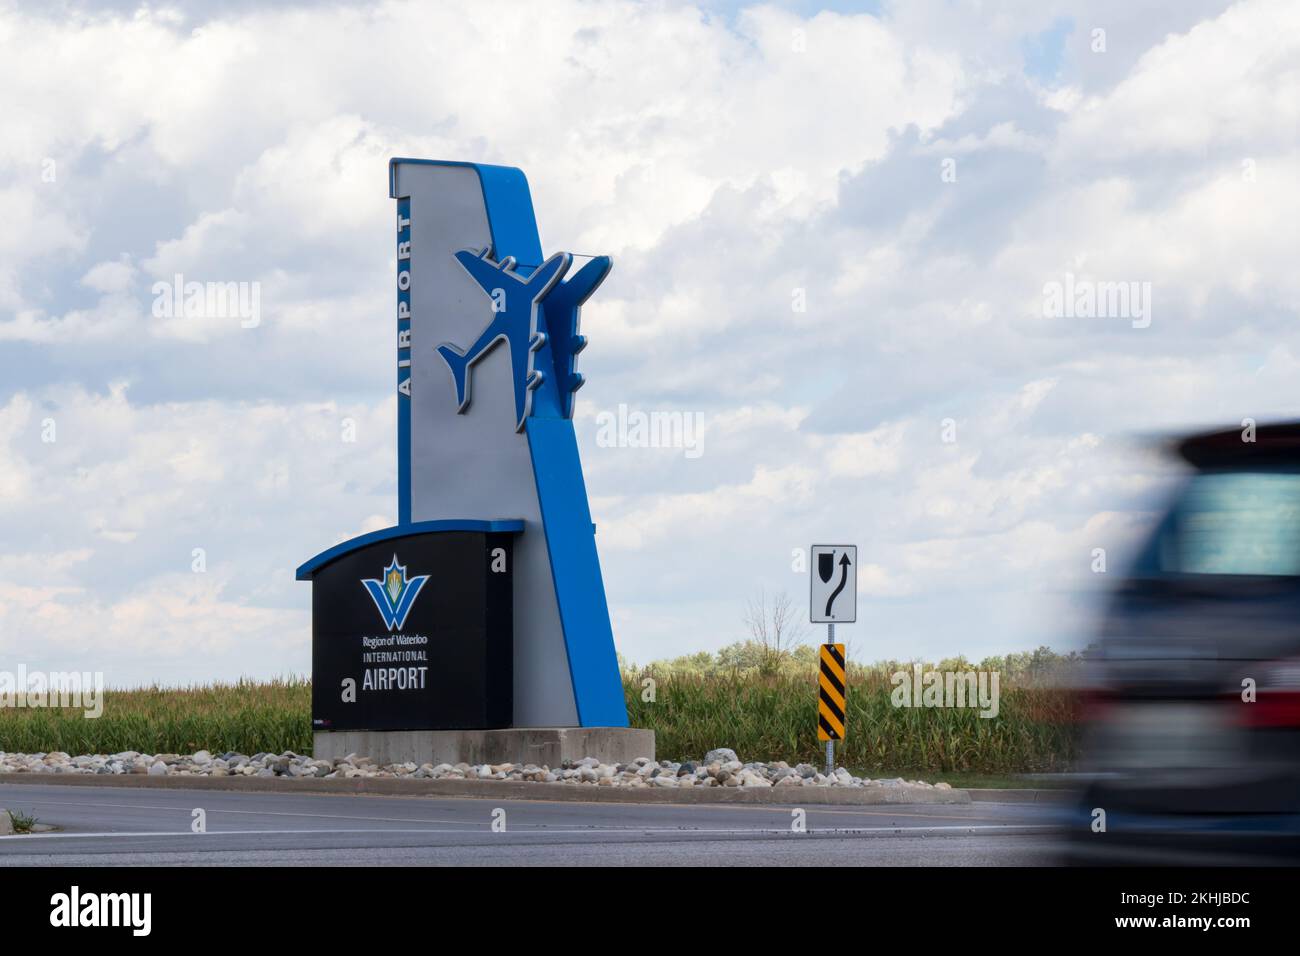 Le panneau de l'aéroport de Kitchener-Waterloo (YKF) se trouve à l'entrée de l'aéroport régional populaire du sud de l'Ontario. Banque D'Images